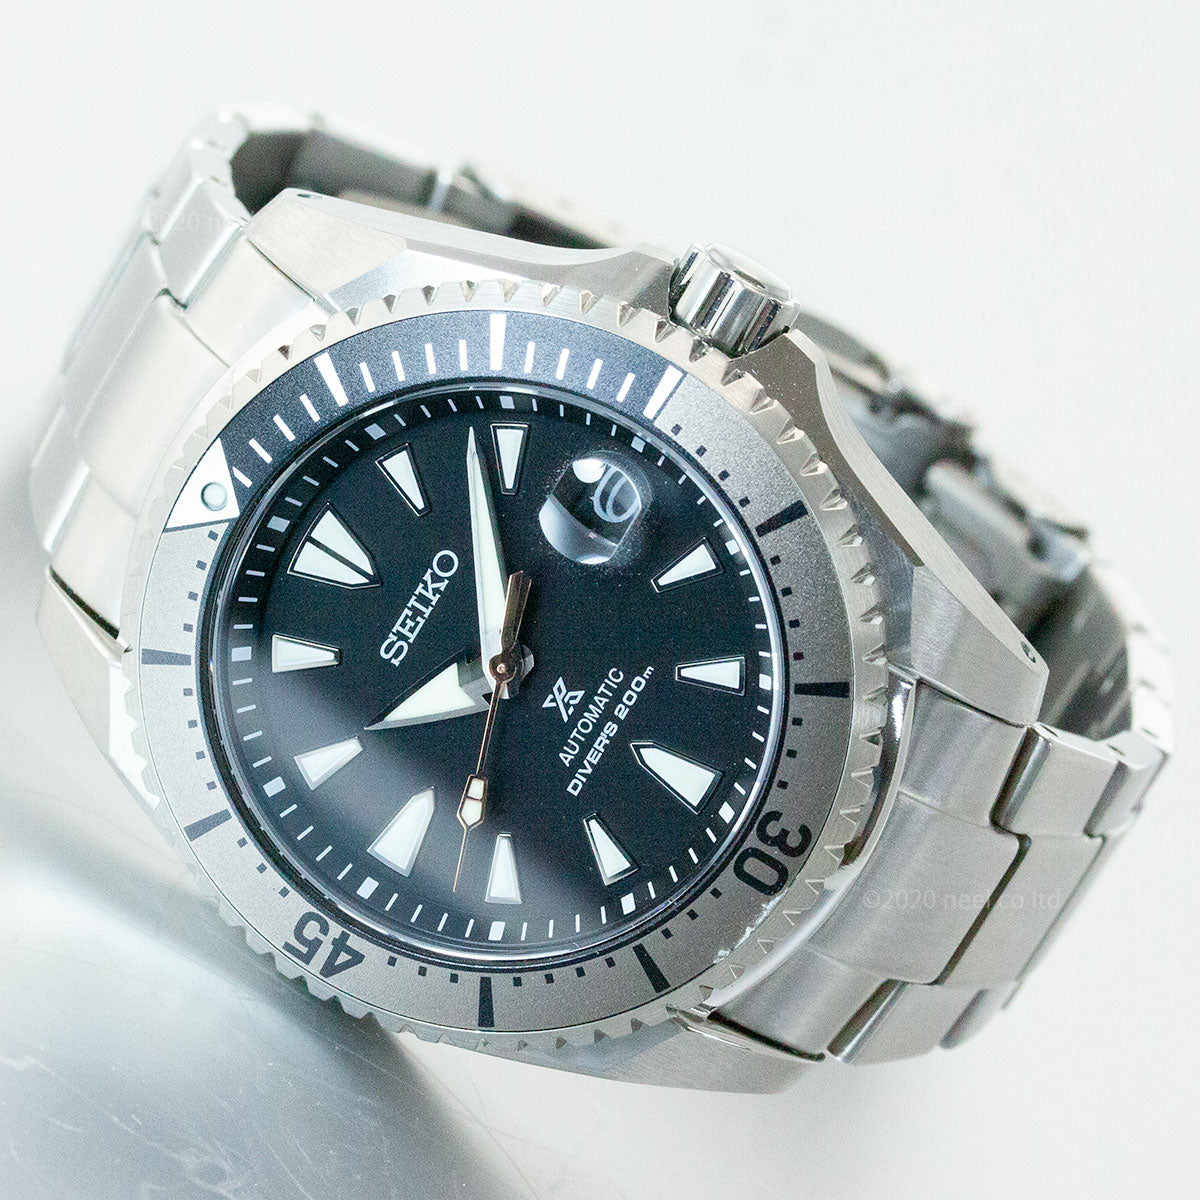 セイコー SEIKO 腕時計 メンズ SBDC129 プロスペックス ダイバースキューバ メカニカル DIVER SCUBA 自動巻き（6R35/手巻き付） ブラックxシルバー アナログ表示